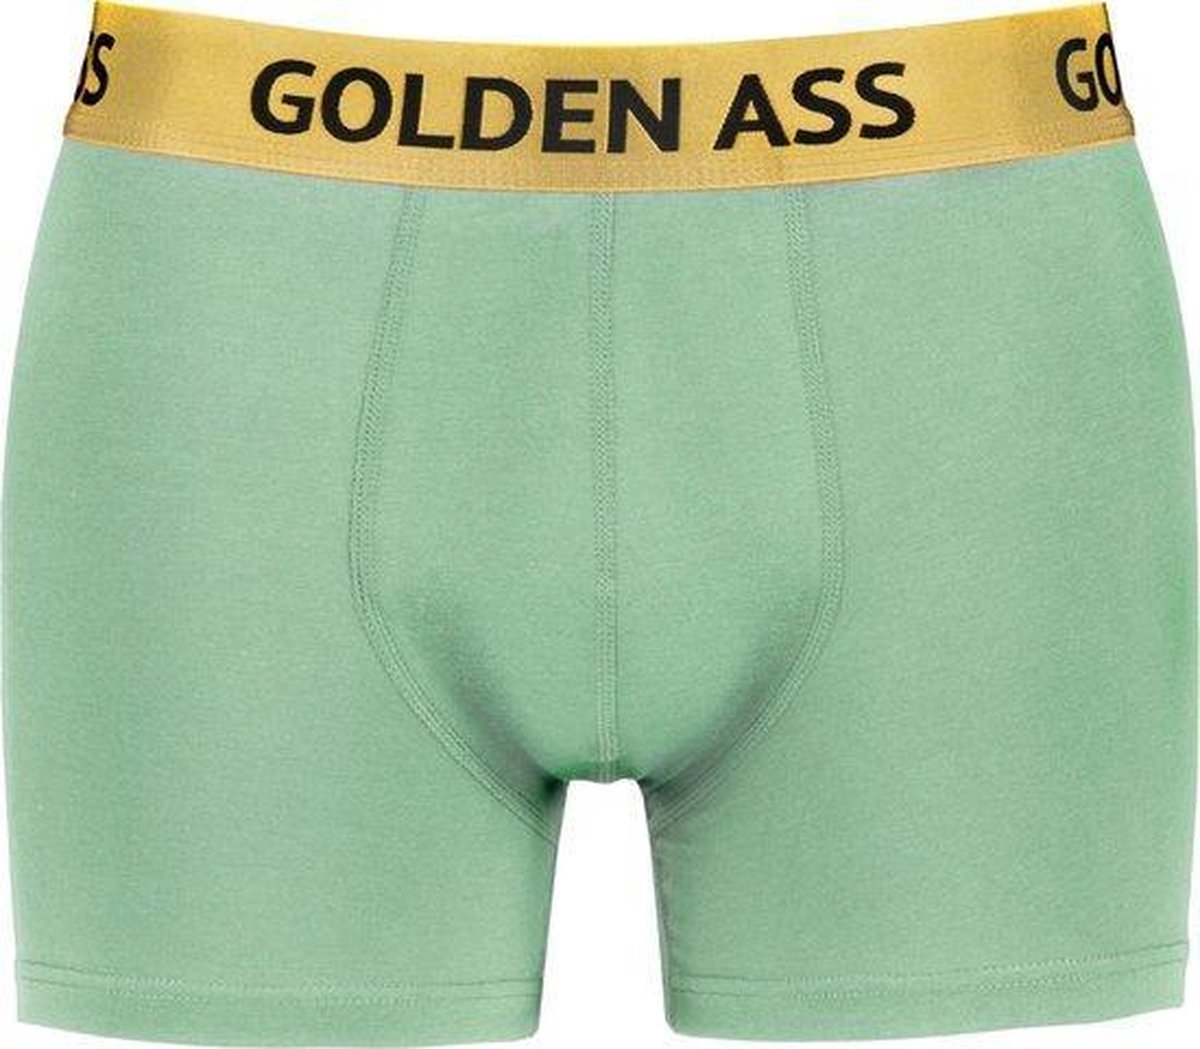 Golden Ass - Heren boxershort mint groen XL